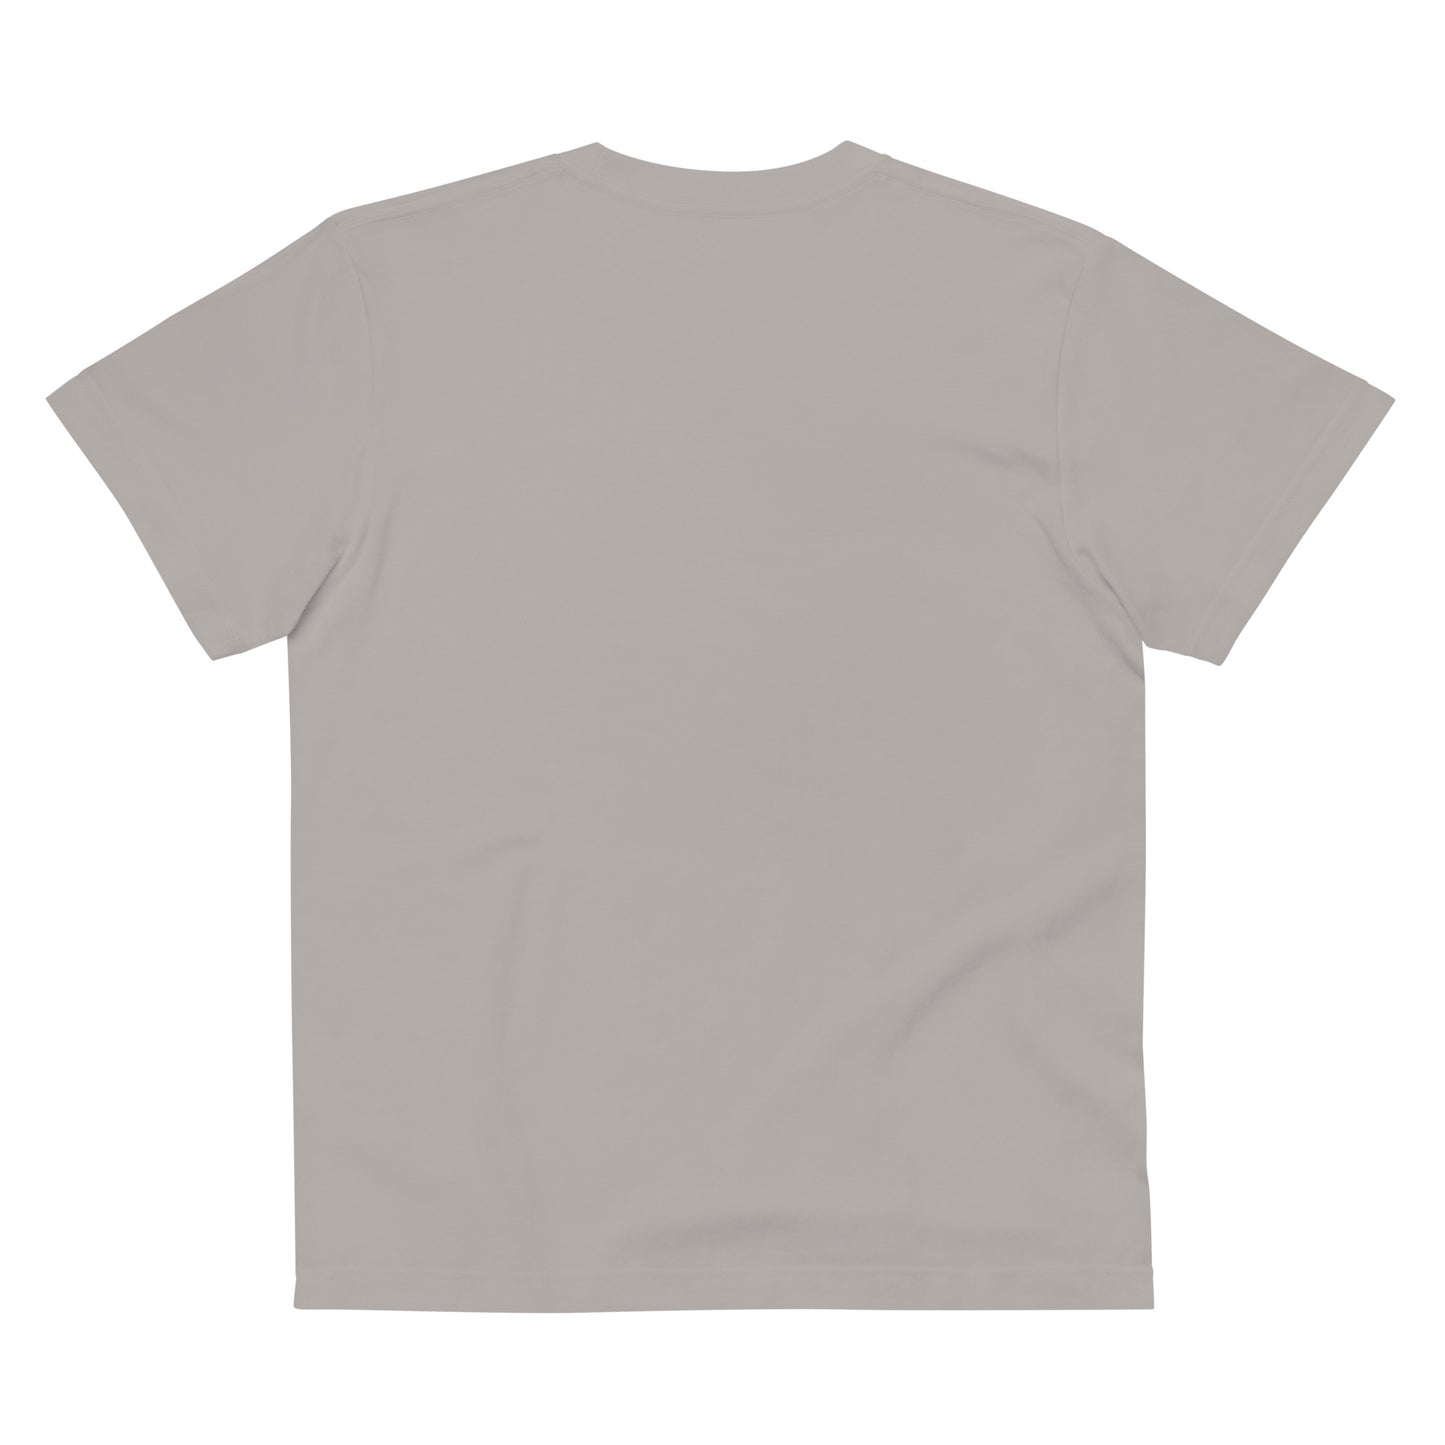 E037 - T-shirt/Bentuk standard (MX menang : Kelabu/Kelabu arang)